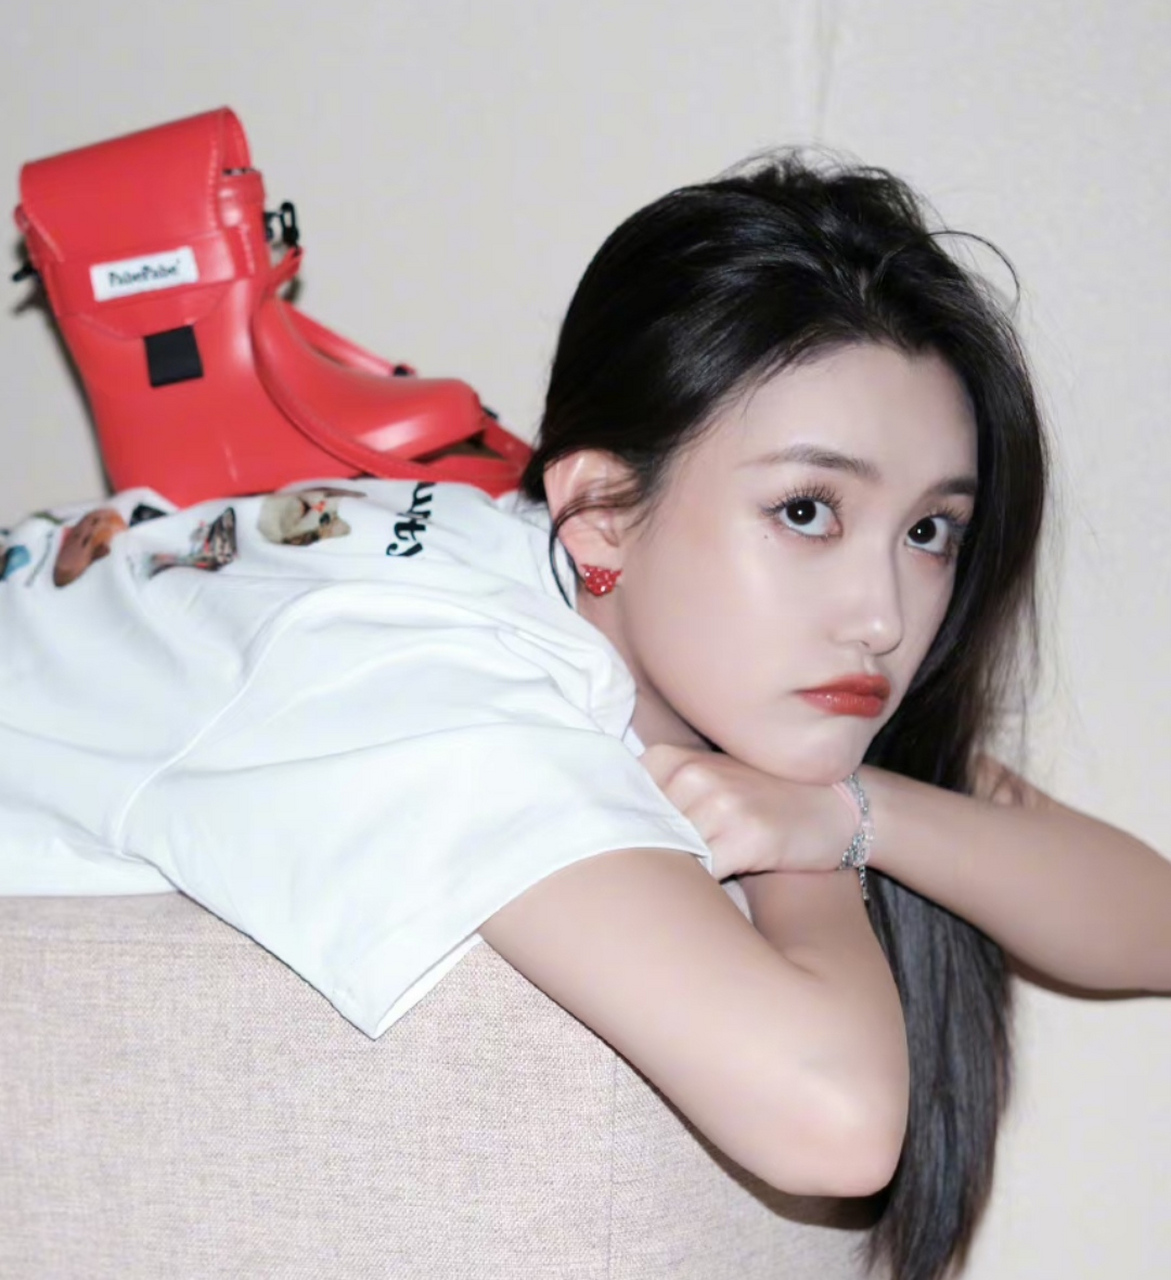 蒋依依在沙发背上凹造型,她的红色包包是靴子的形状,太时髦了